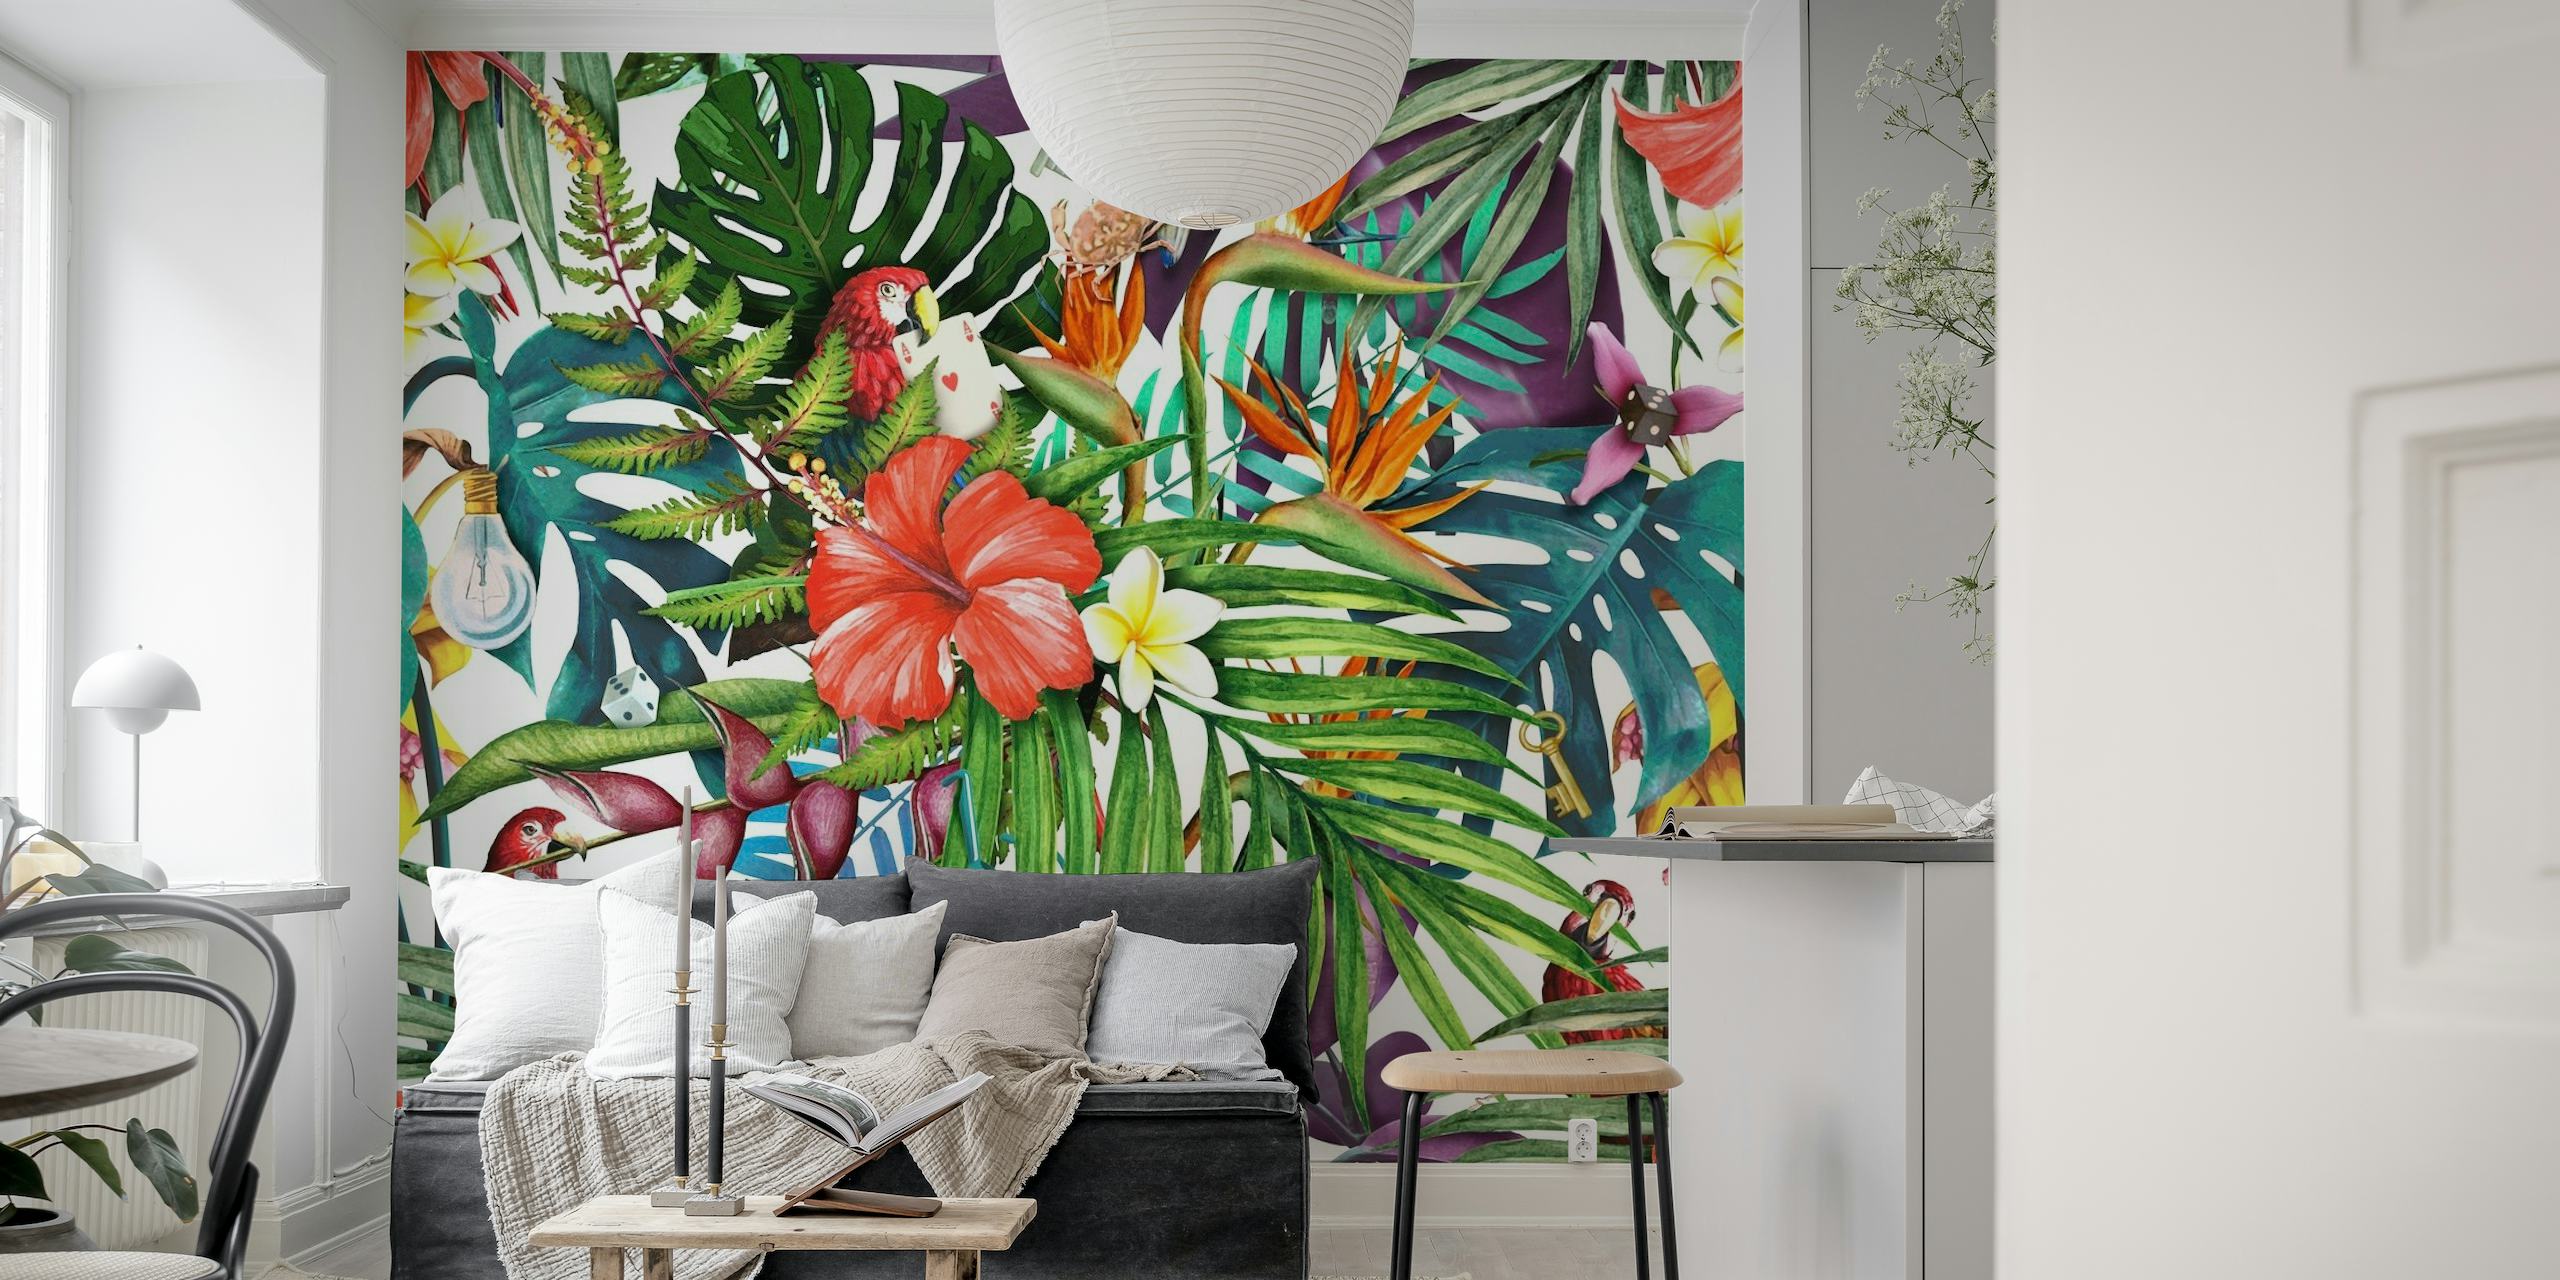 Väggmålning i tropisk djungel med livfulla blommor och frodigt lövverk